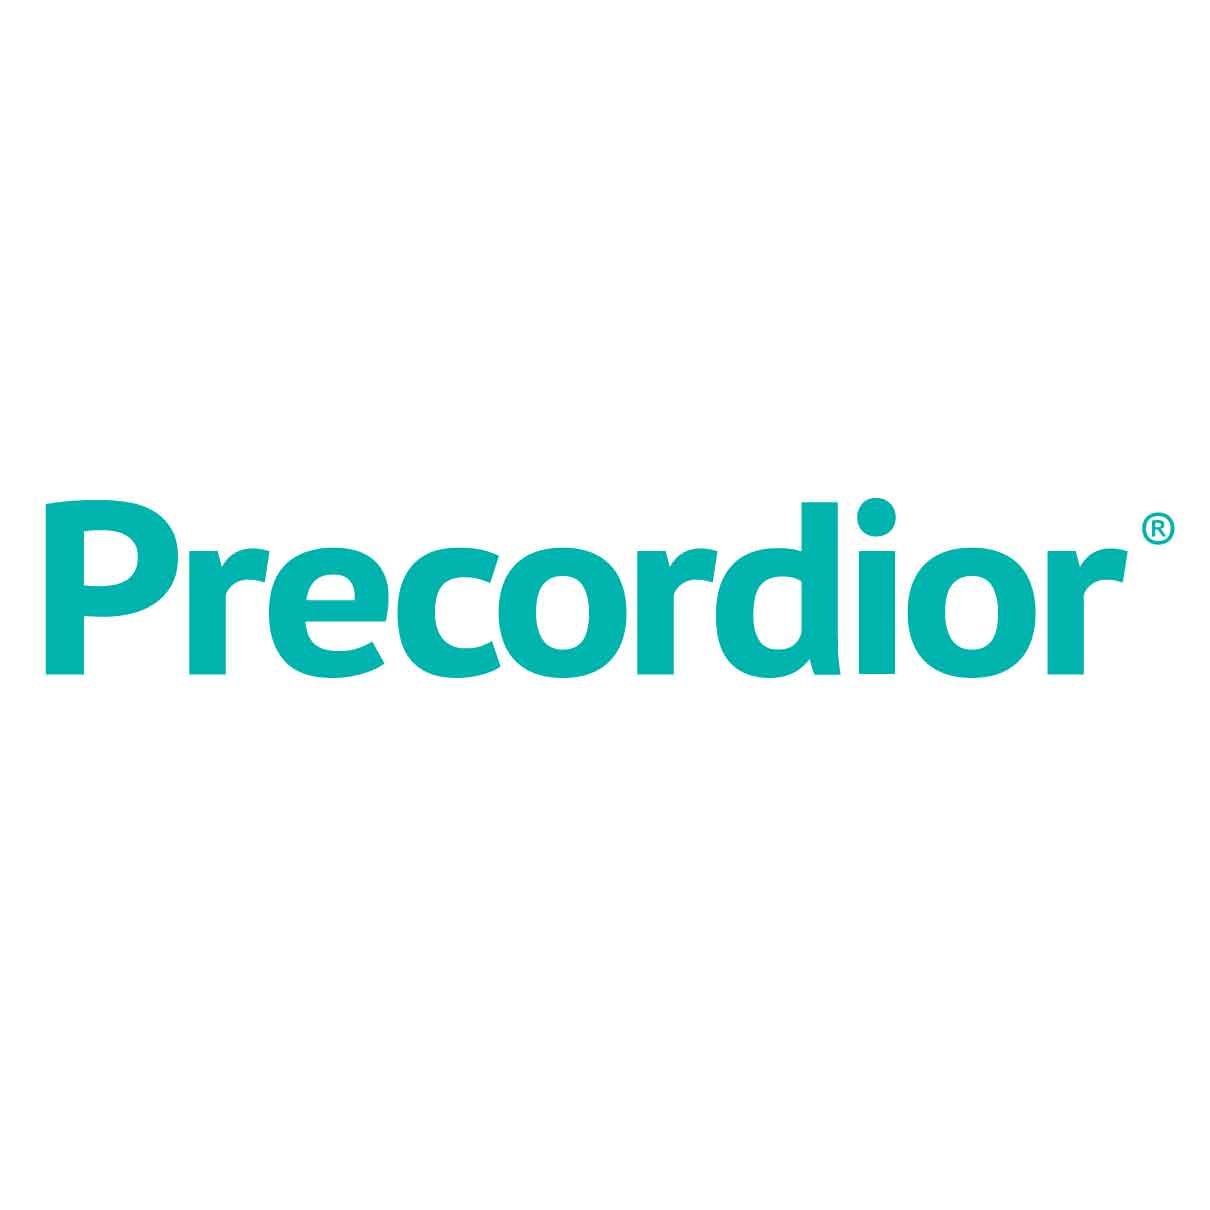 Precordior Ltd.